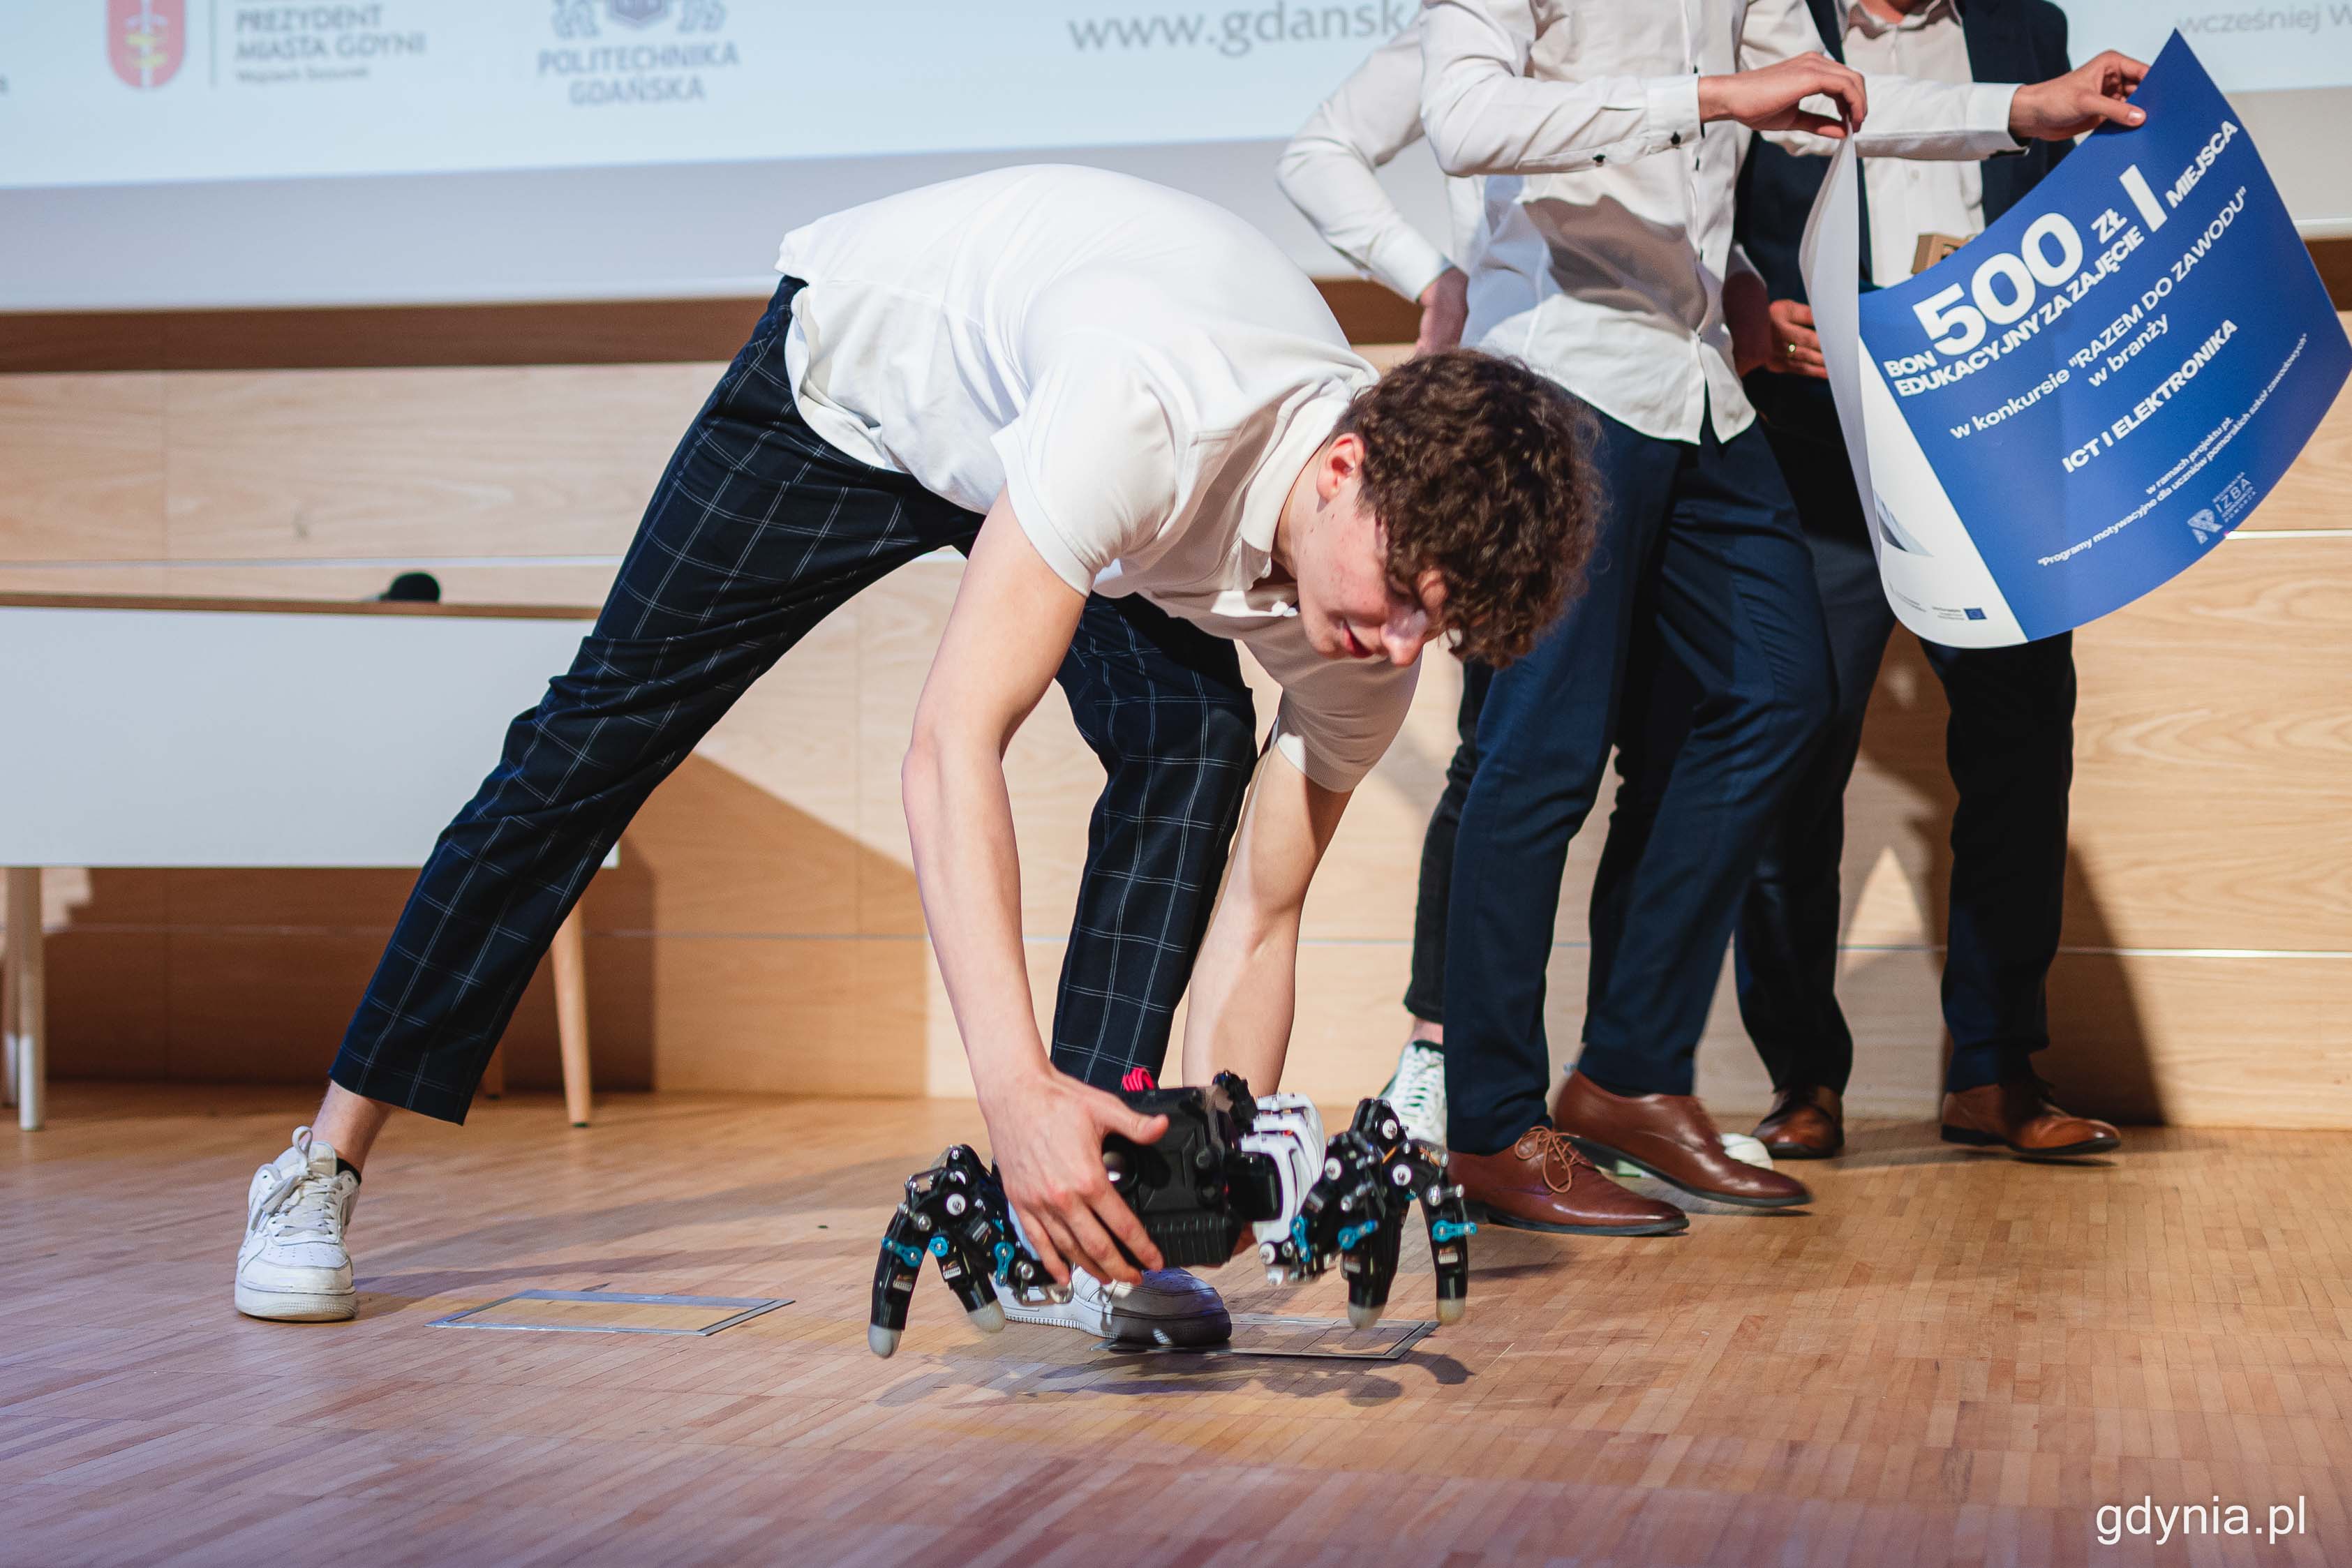 Robot, który wygrał w kategorii ICT/elektronika, projekt uczniów z Technikum nr 1 w Starogardzie Gdańskim, fot. Kamil Złoch